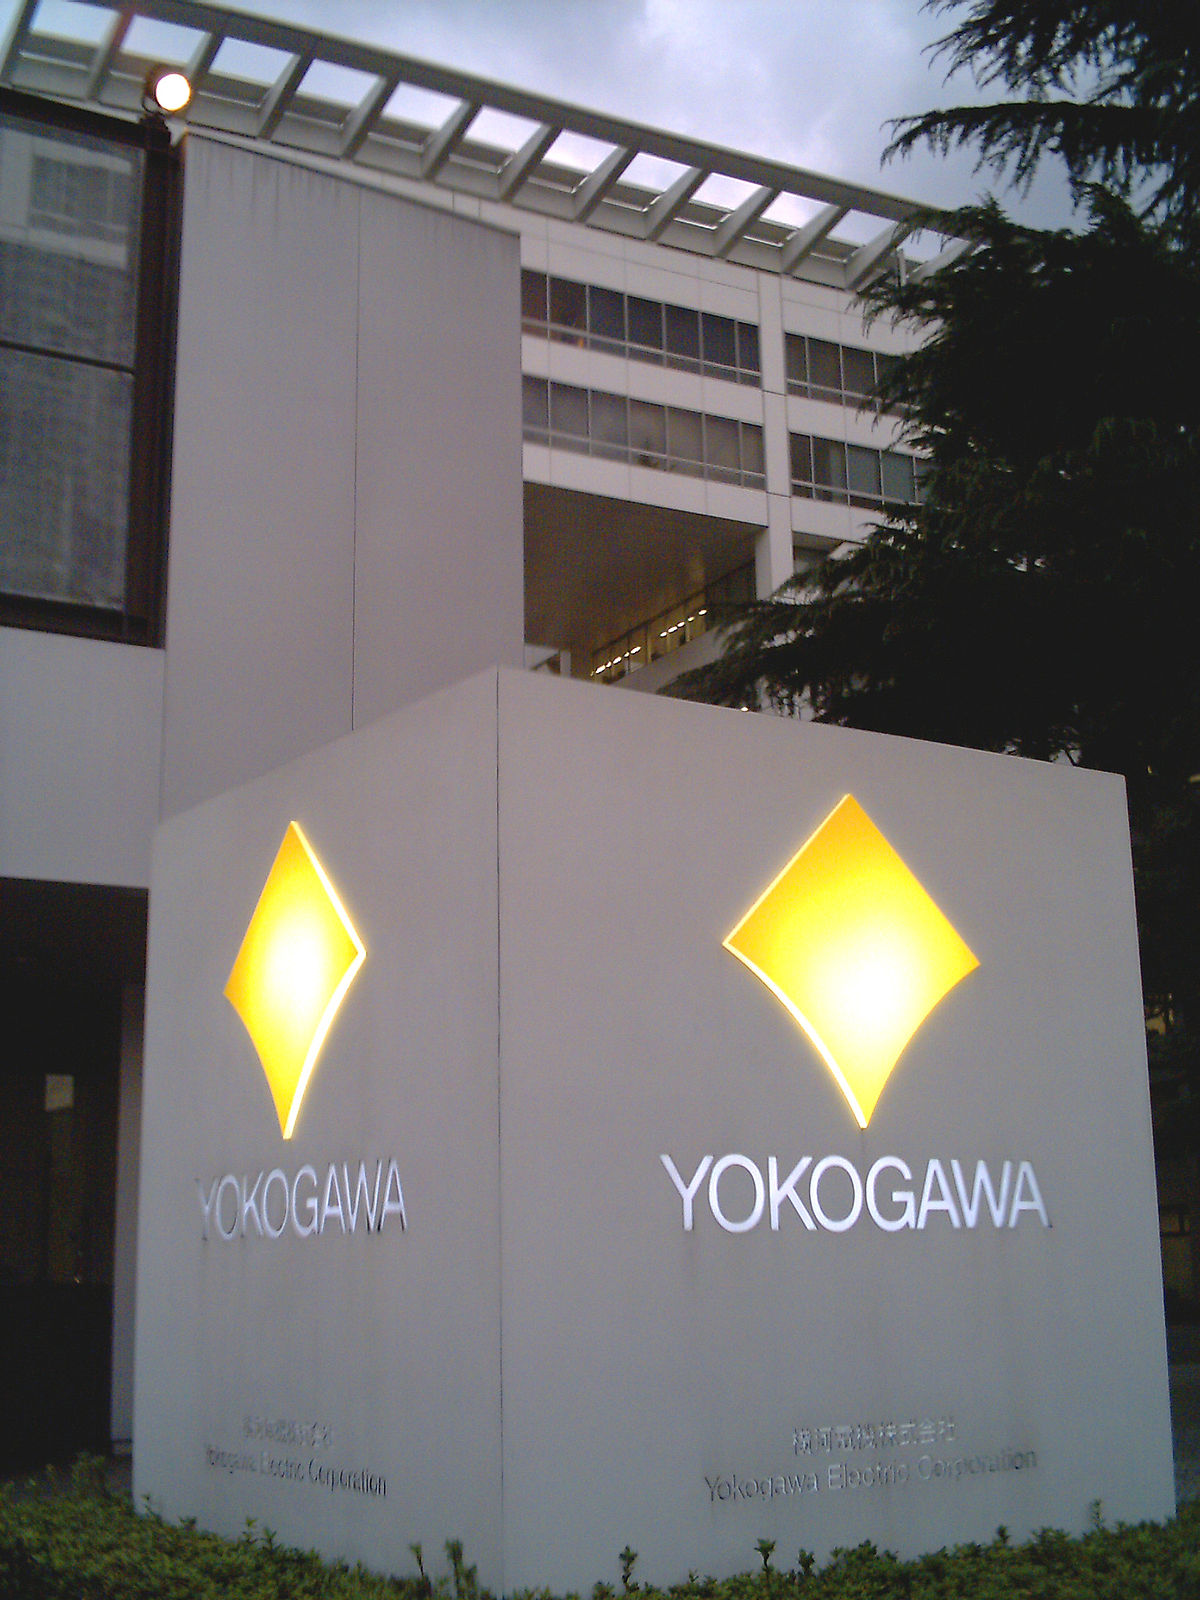 Japan’s Yokogawa opens subsidiary in Morocco